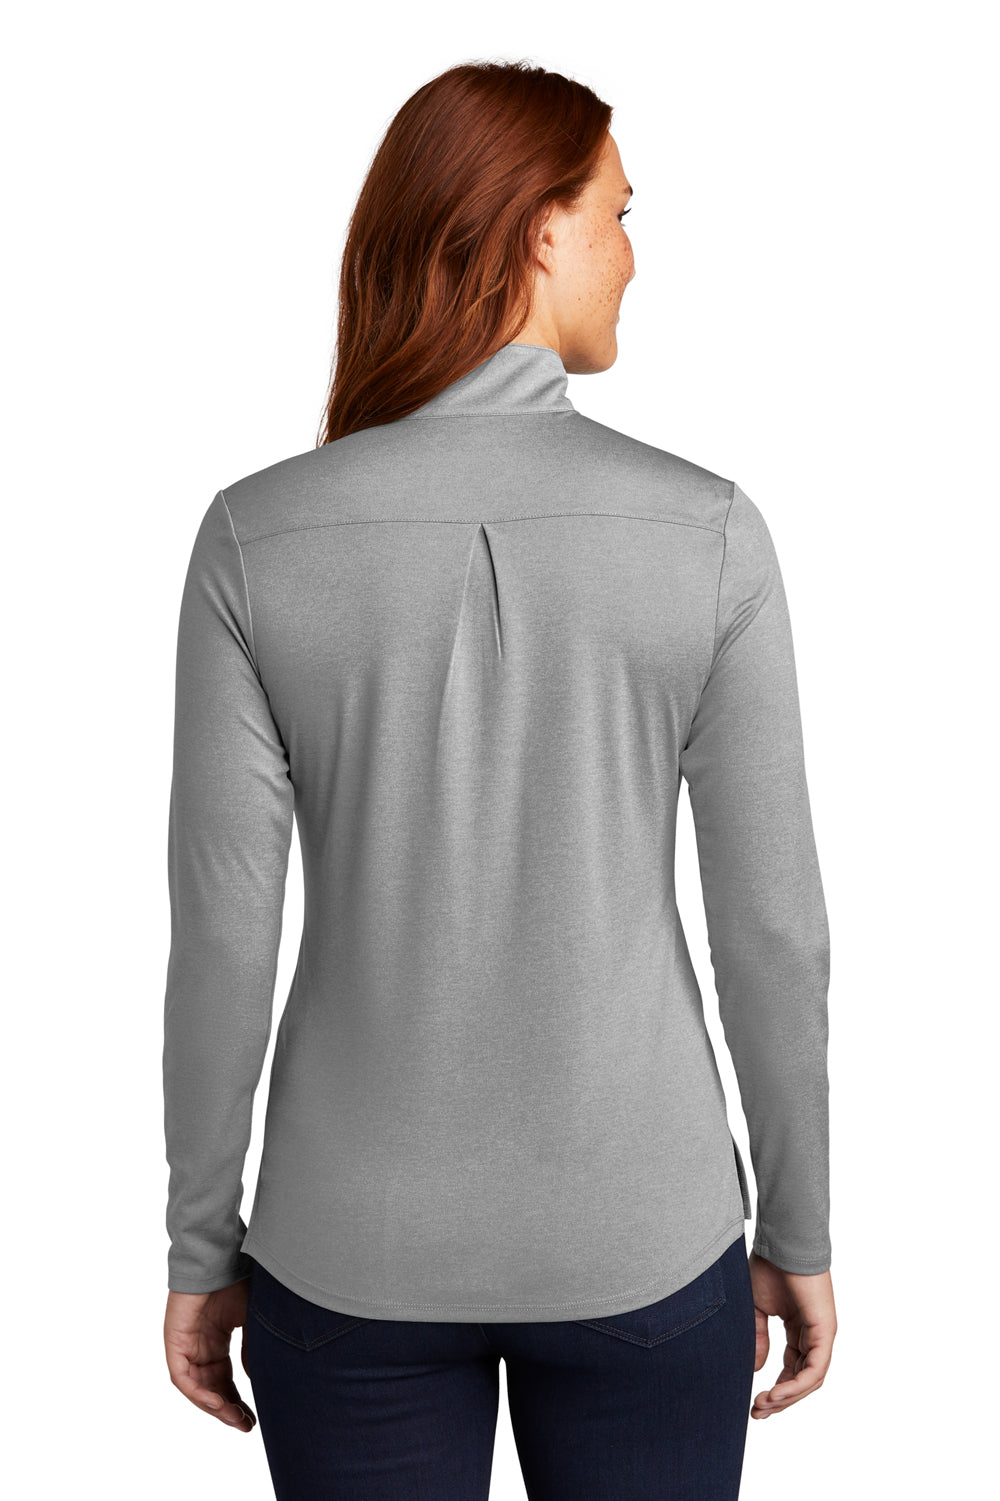 Sport-Tek Womens Endeavor 1/4 Zip Sweatshirt Heather Light Grey Side